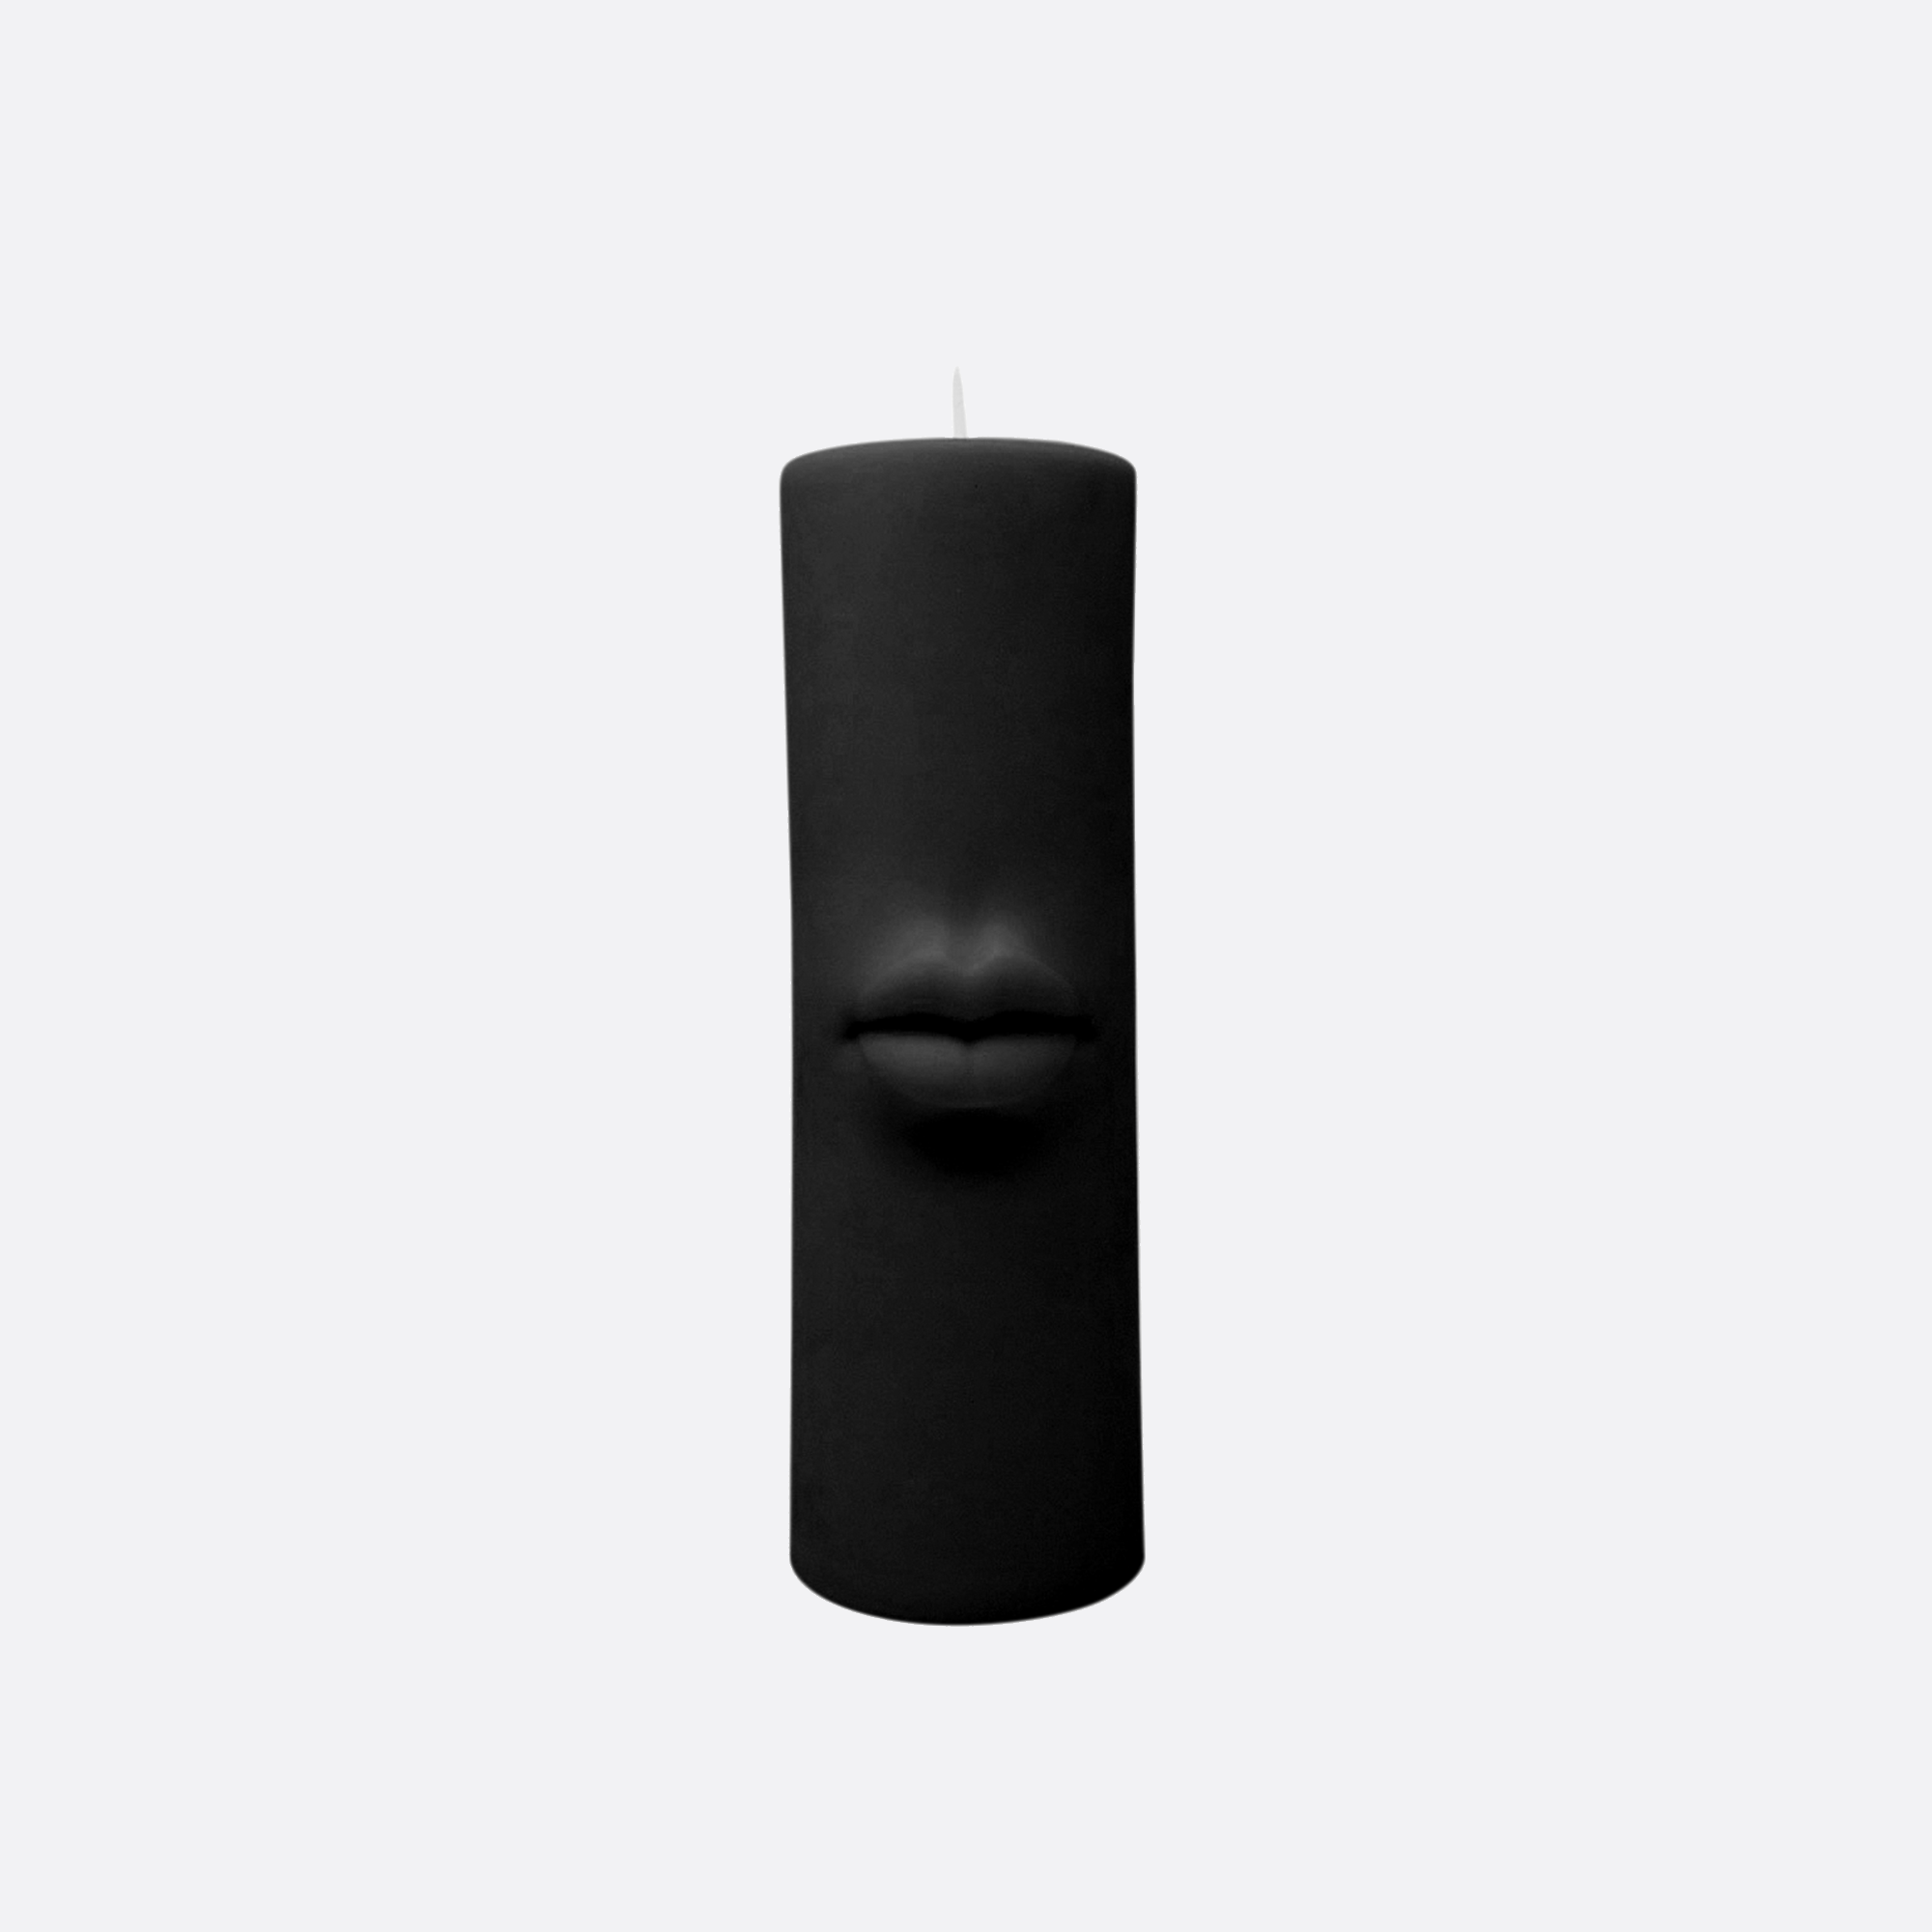 Lips Form Candle, noir black